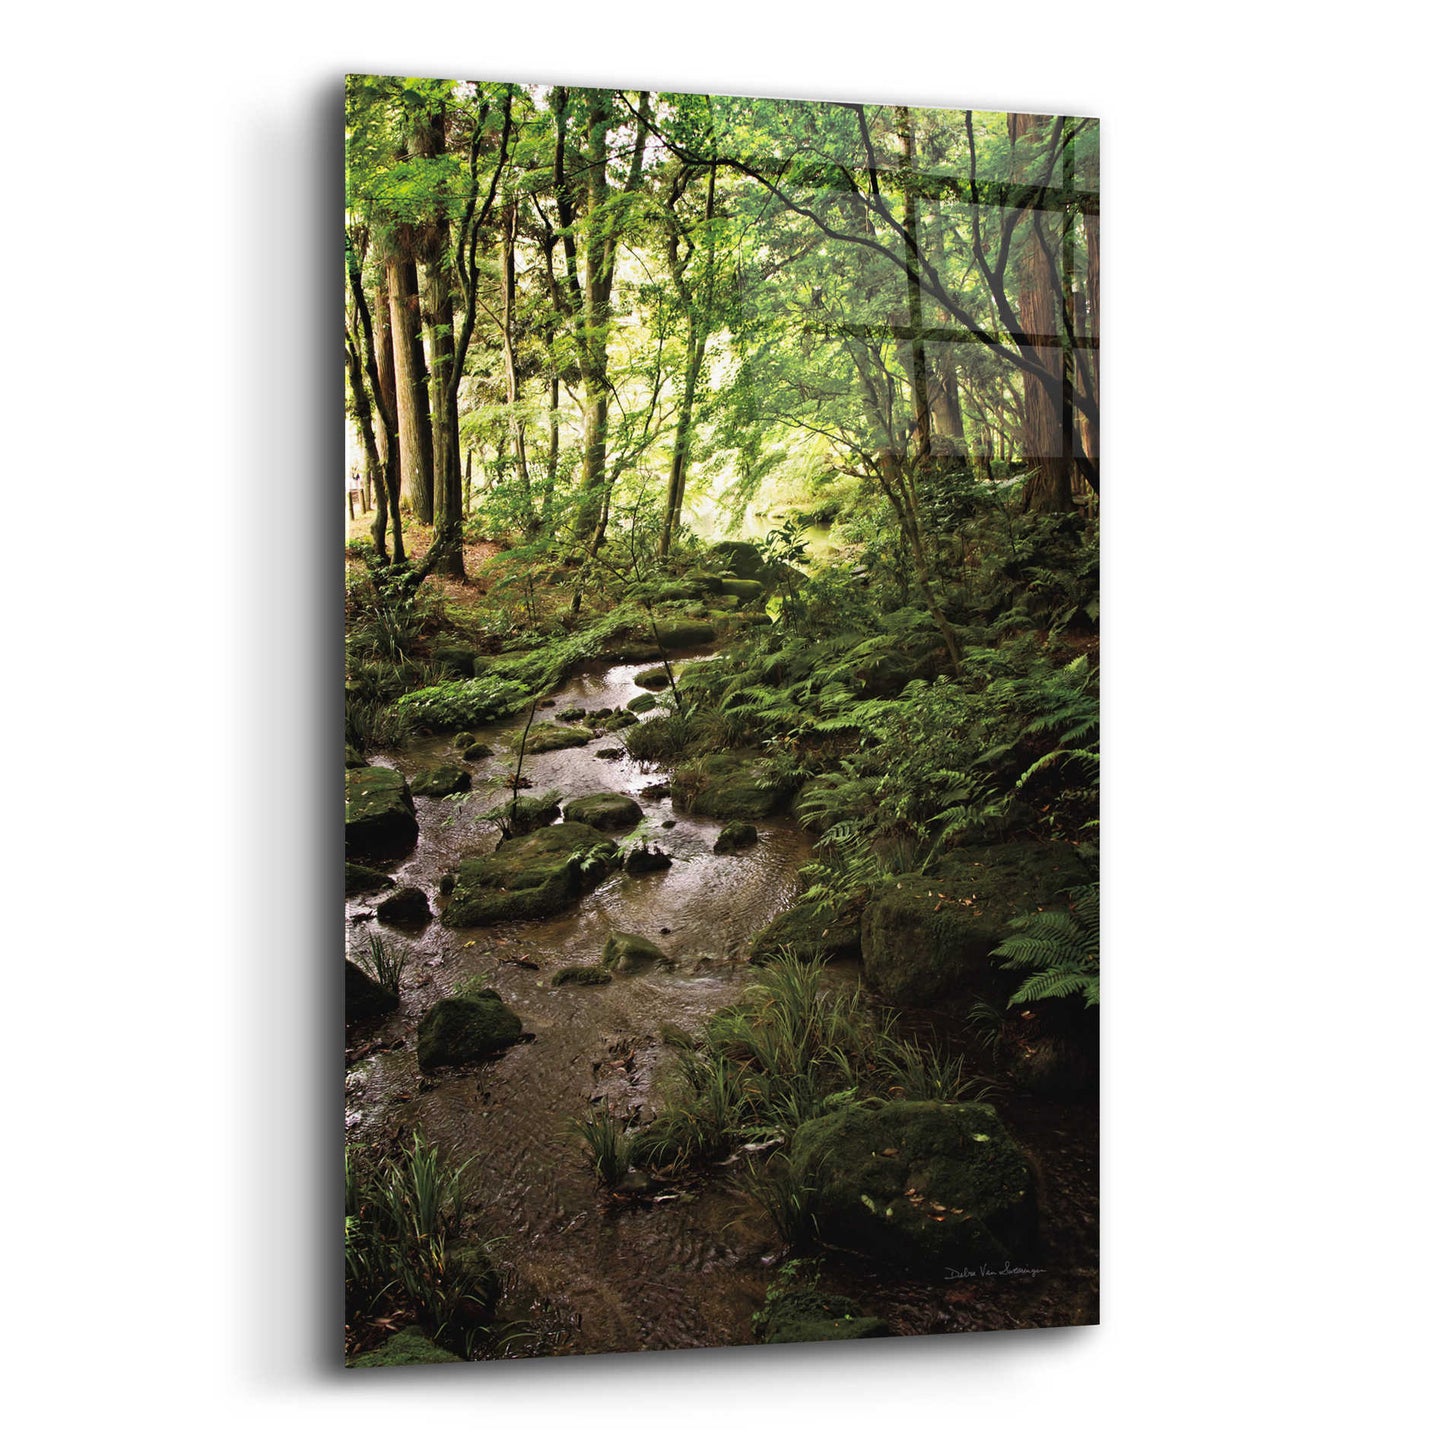 Epic Art 'Lush Creek in Forest' by Debra Van Swearingen, Acrylic Glass Wall Art,16x24